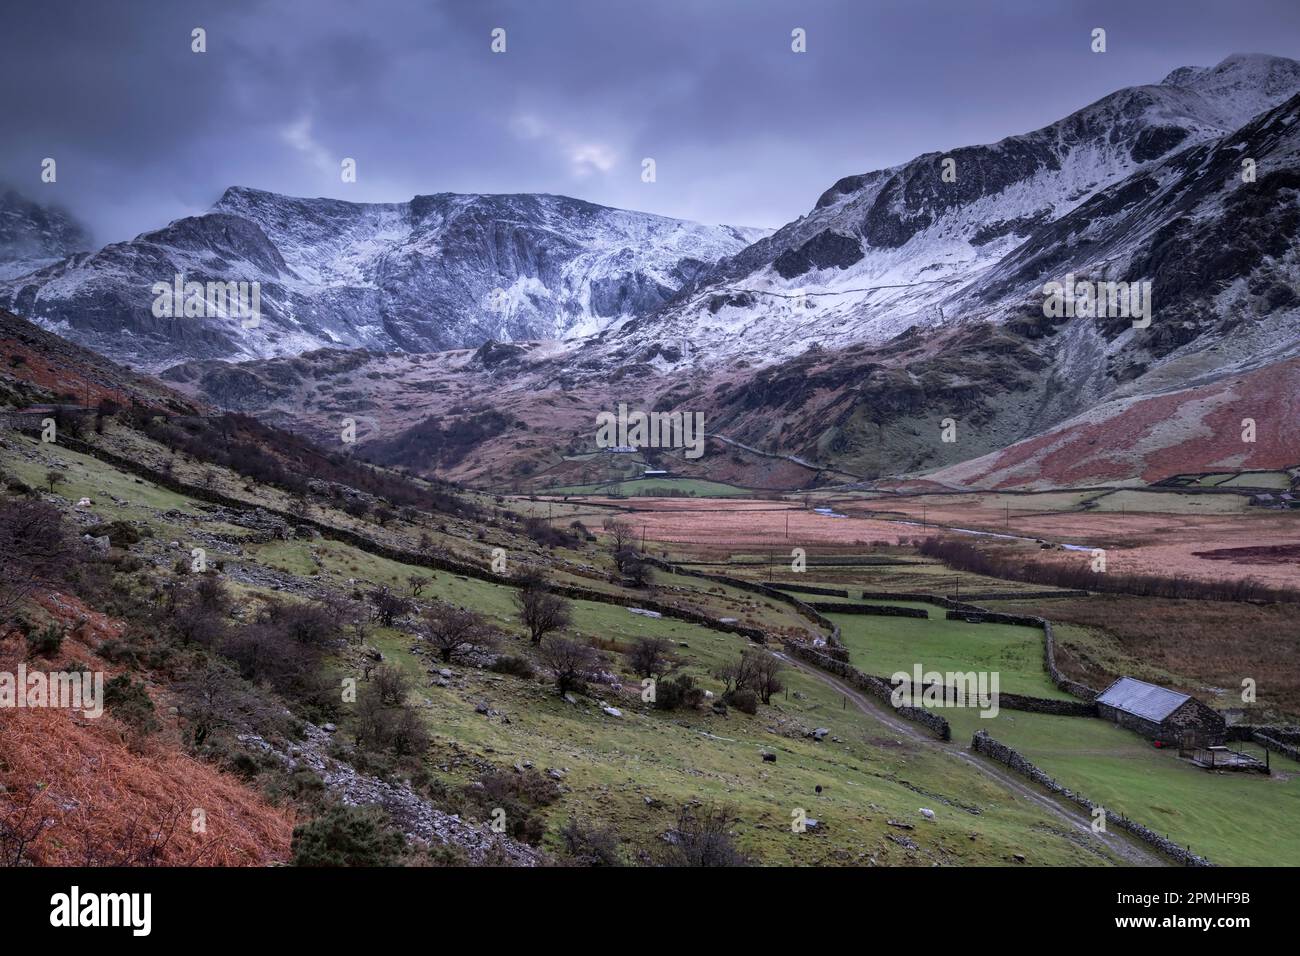 La valle di Nant Ffrancon, sostenuta dai monti Glyderau in inverno, il Parco Nazionale di Snowdonia, Eryri, Galles del Nord, Regno Unito, Europa Foto Stock